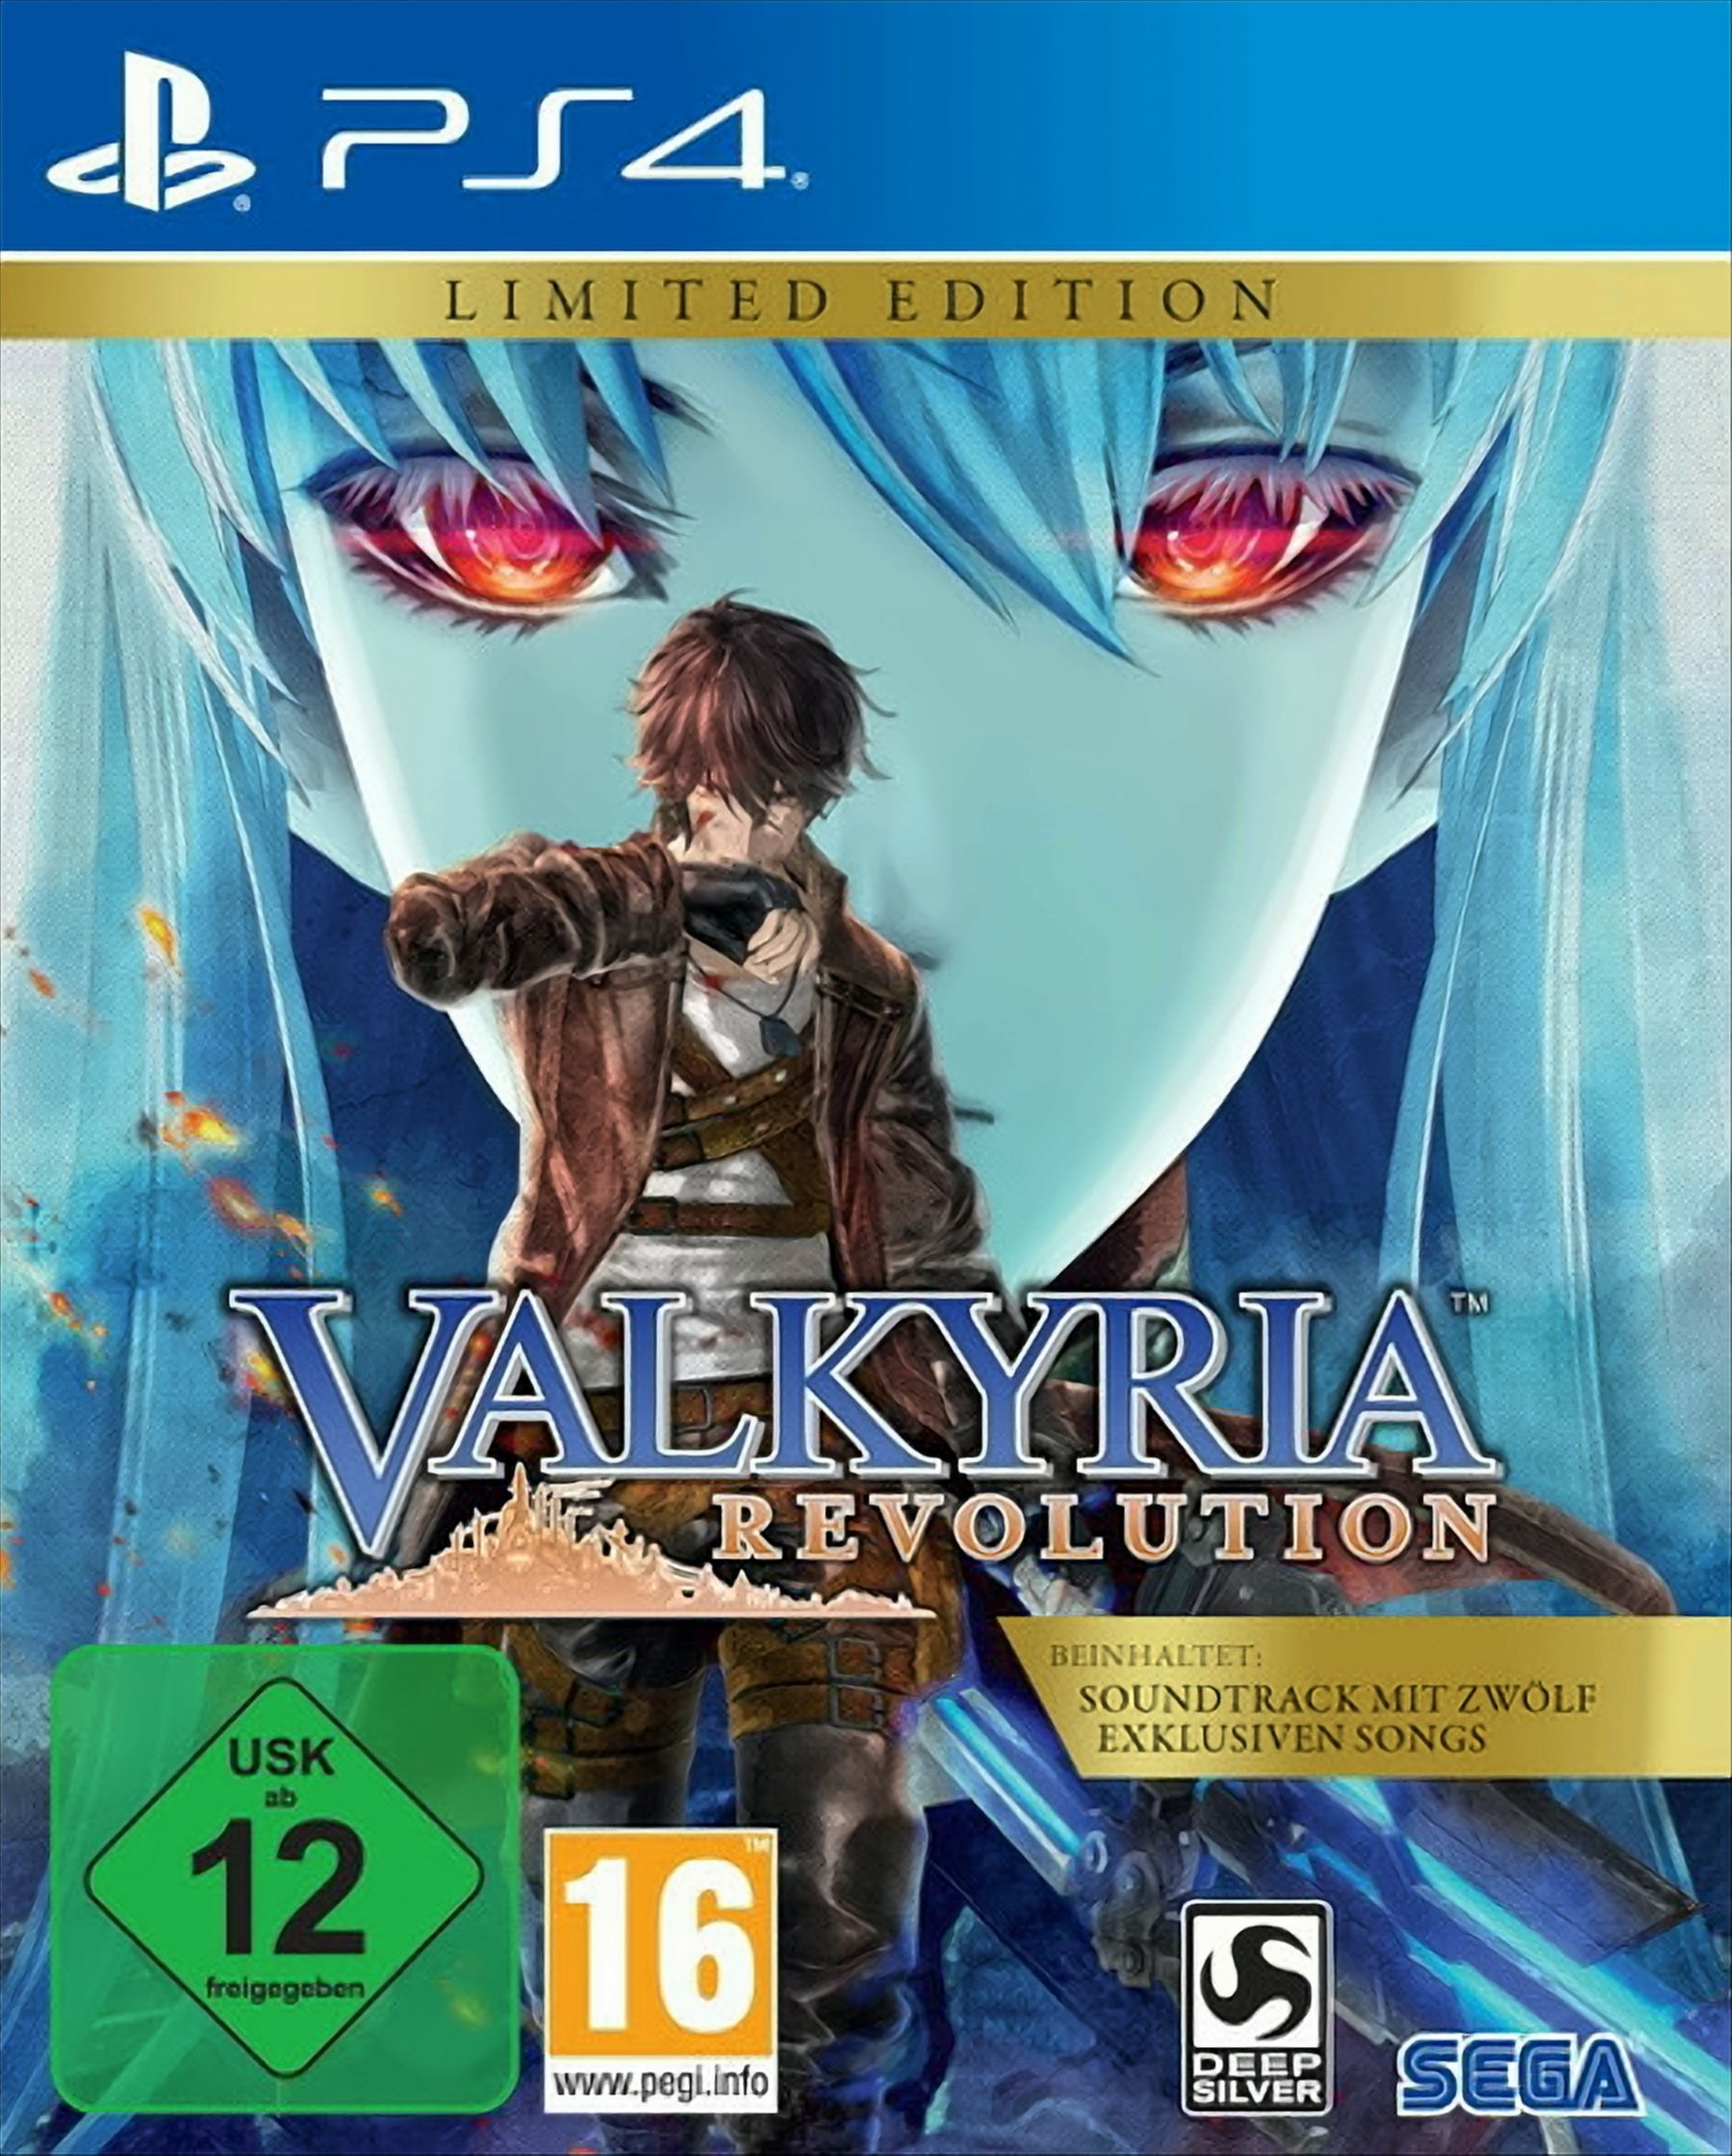 Edition [PlayStation Revolution Valkyria - 4] Limited -